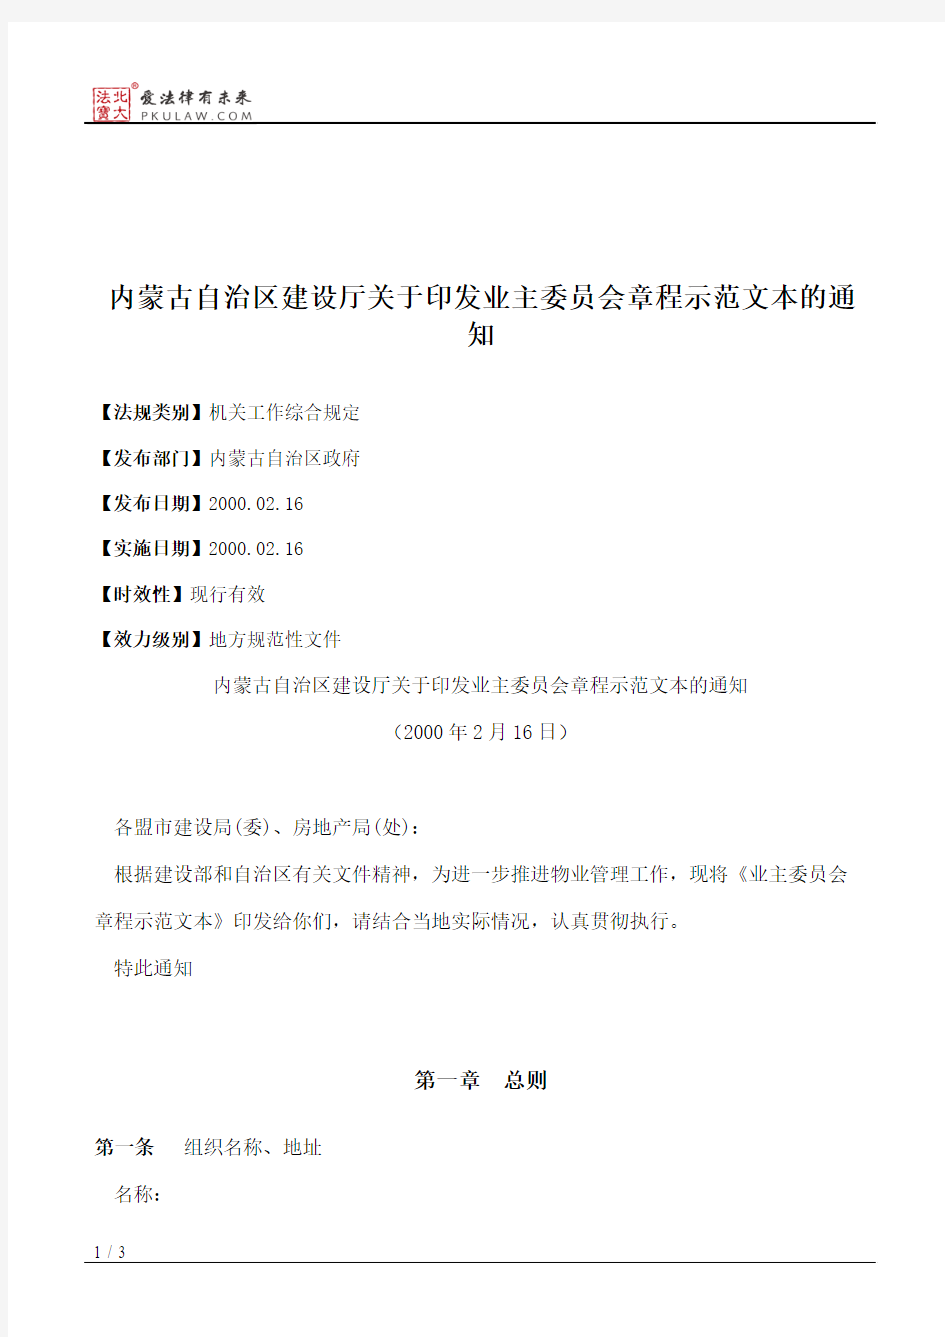 内蒙古自治区建设厅关于印发业主委员会章程示范文本的通知